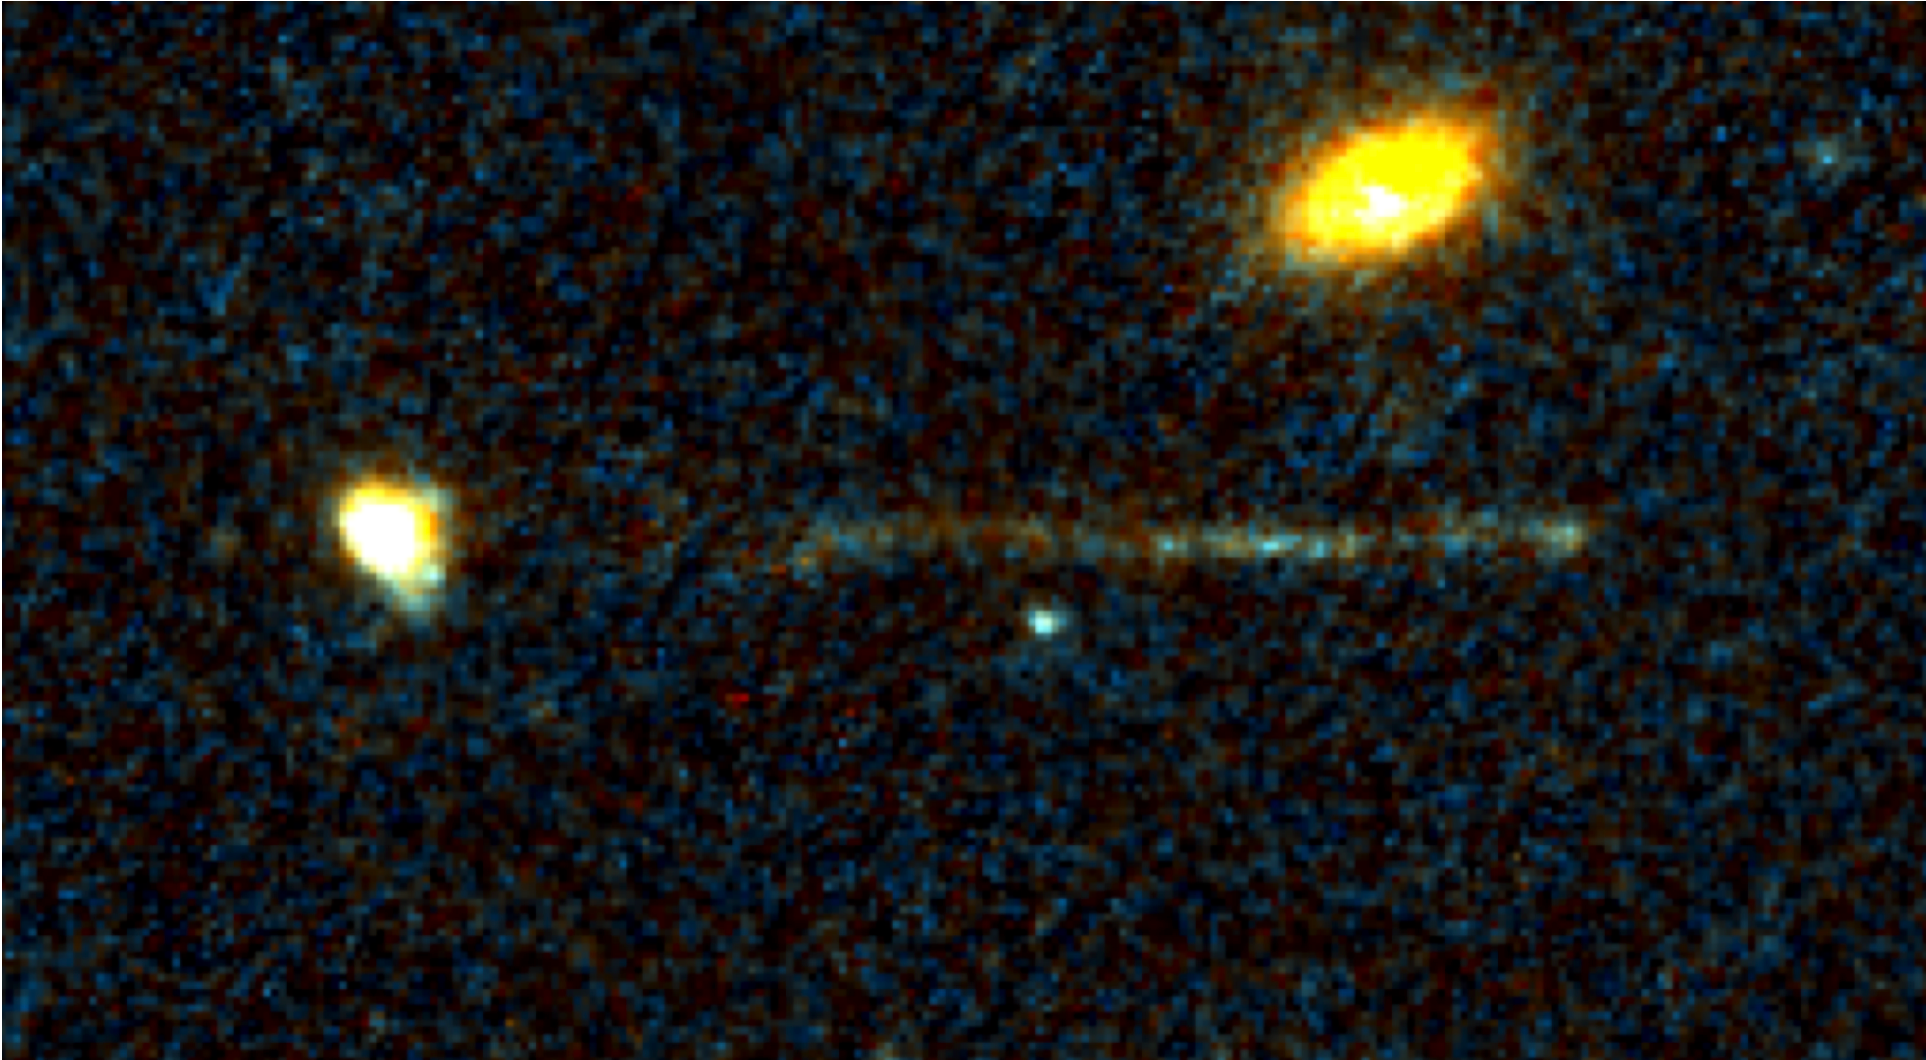 Die Aufnahme des Weltraumteleskops Hubble zeigt zwei kompakte Galaxien und einen auffälligen Streifen junger Sterne